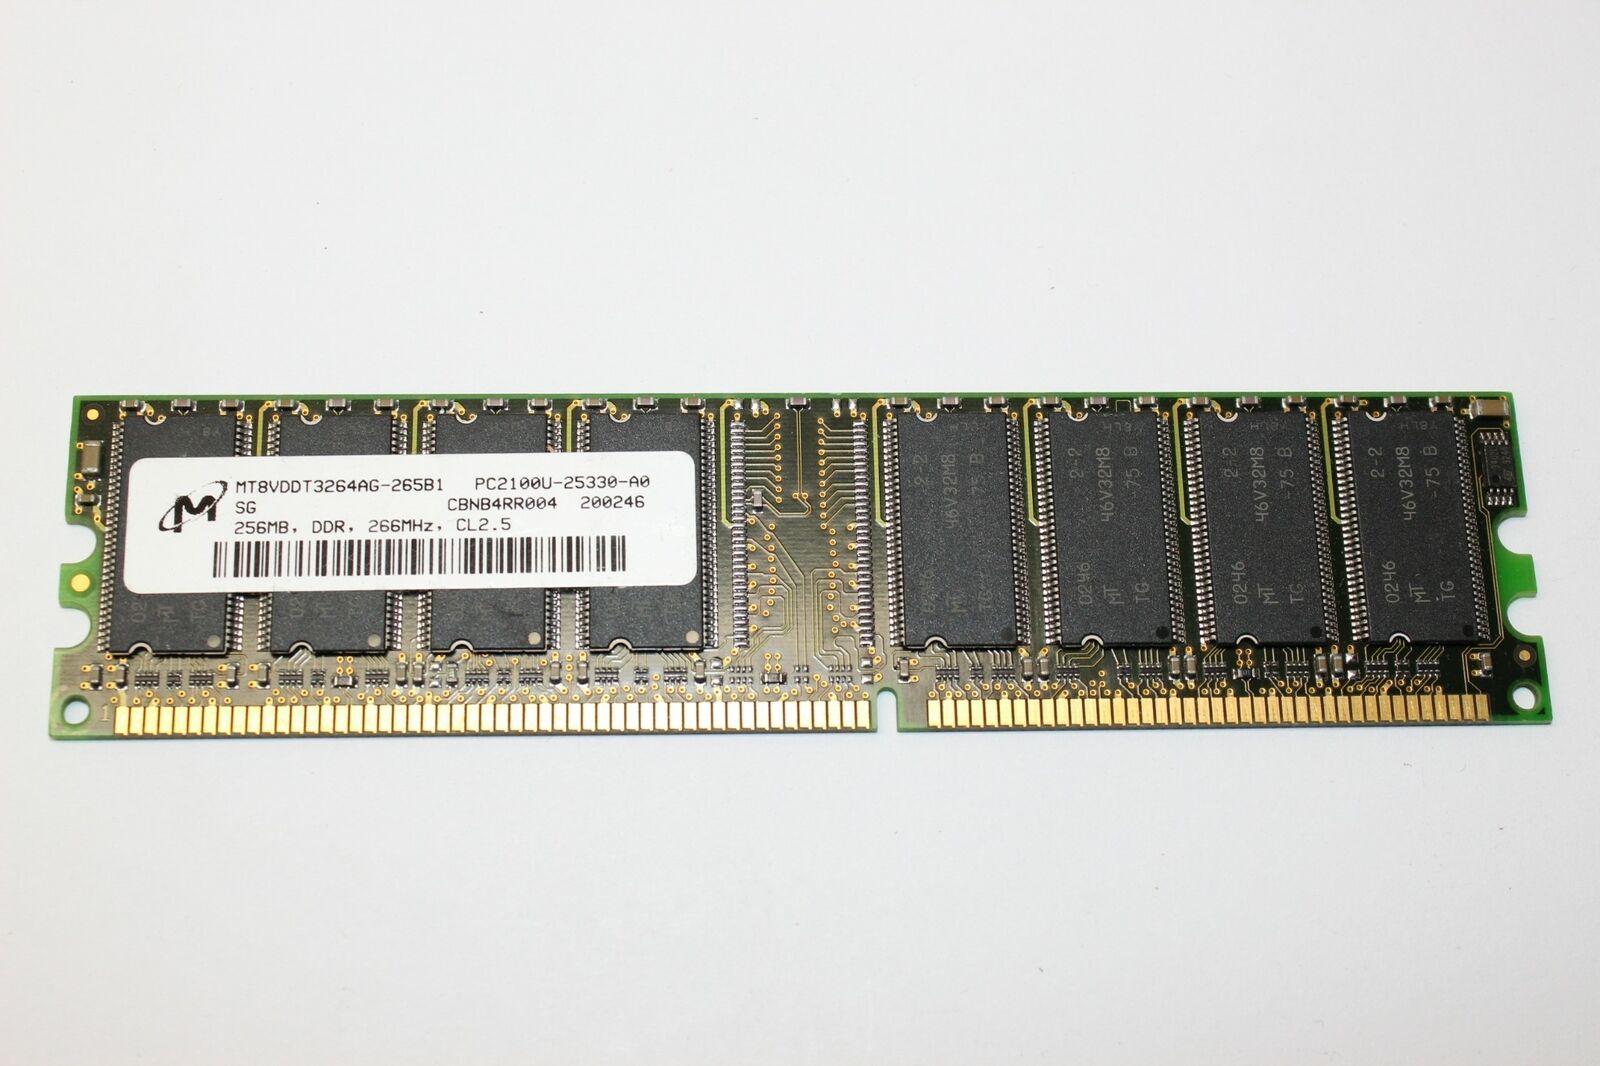 MT8VDDT3264AG-265B1 PC2100U-25330-A0 256MB DDR 266MHz Memory RAM for Computer PC